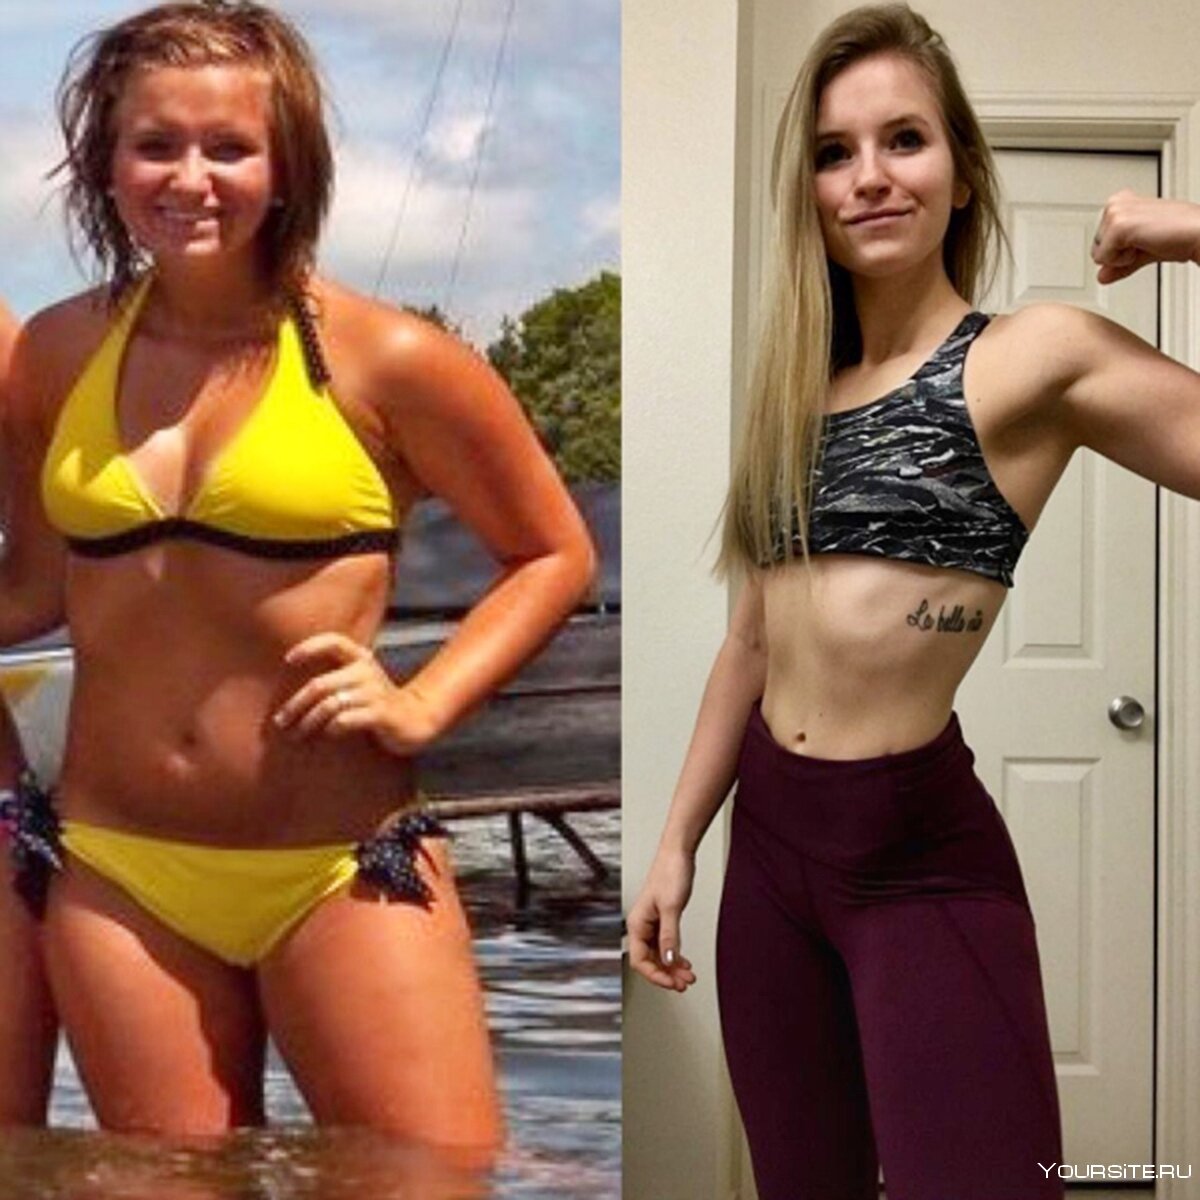 Бег — результаты до и после тренировки для похудения